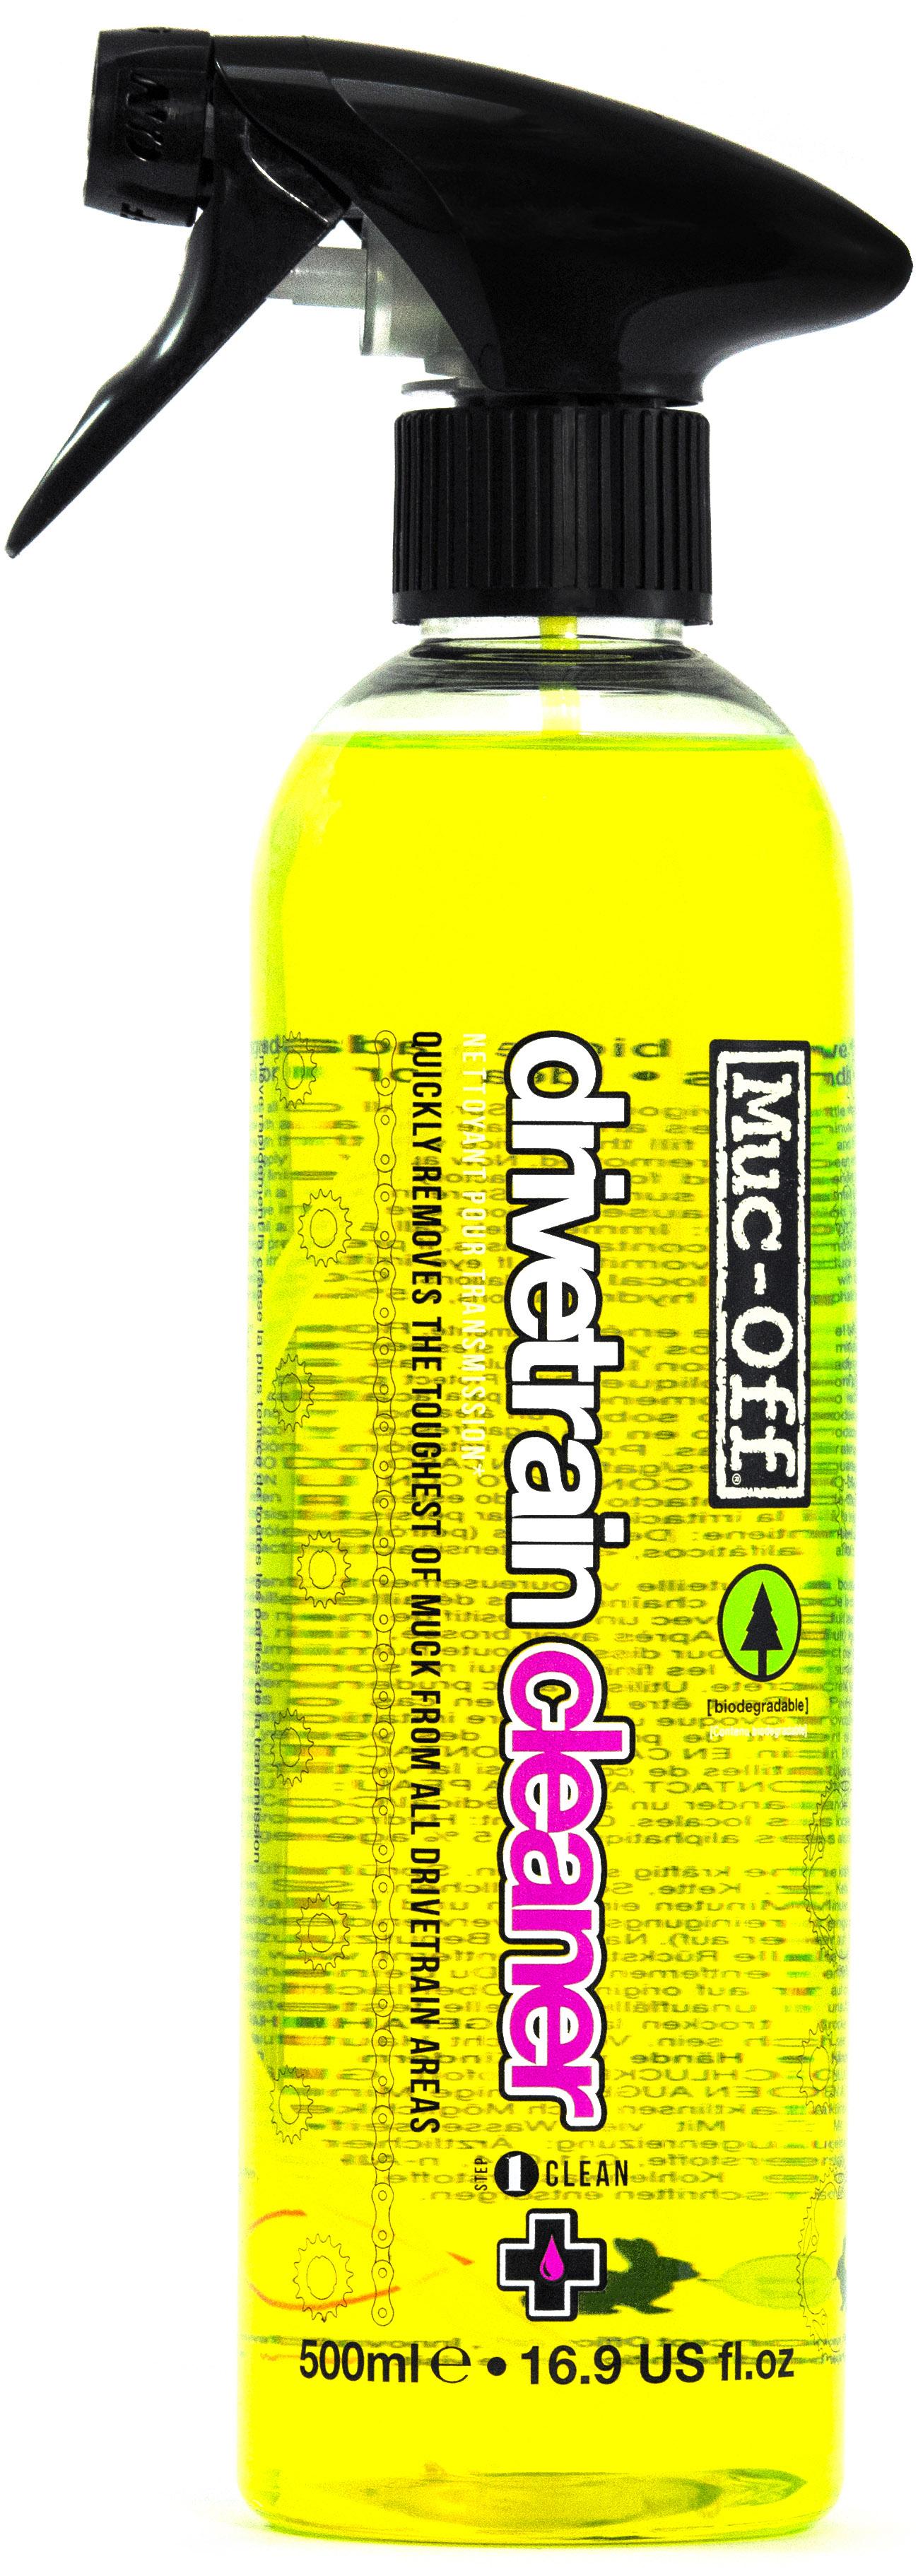 Muc-off Drivetrain Cleaner (500ml) - Yellow